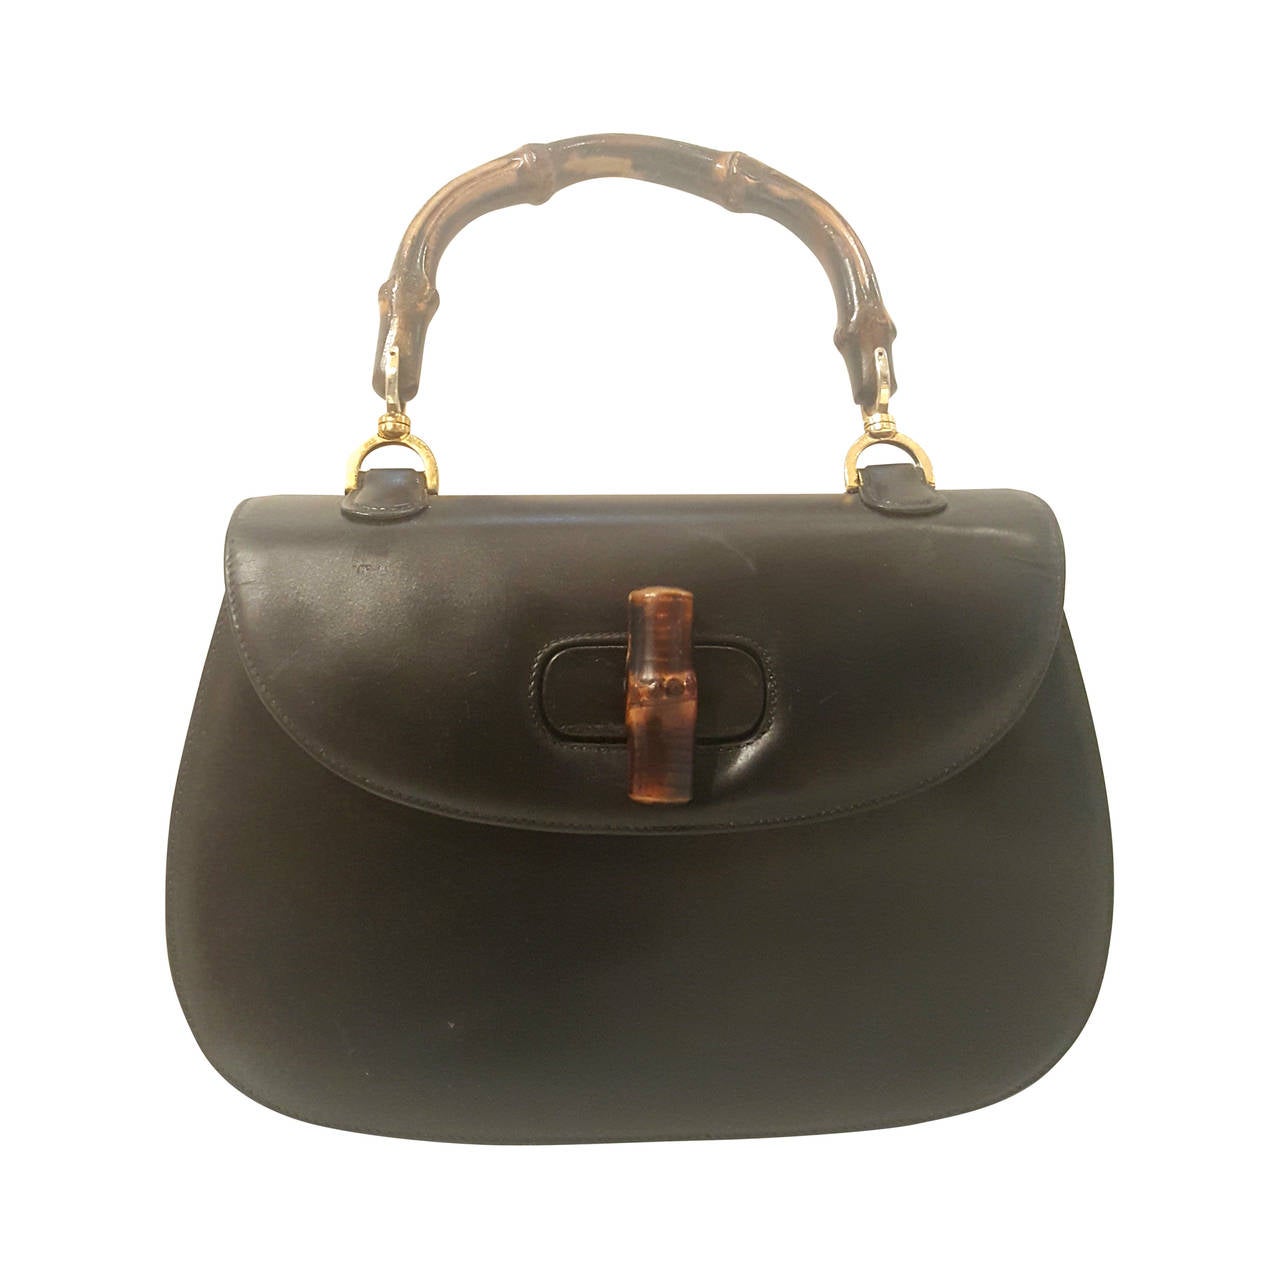 1980s Gucci Bamboo black leather handbag at 1stdibs